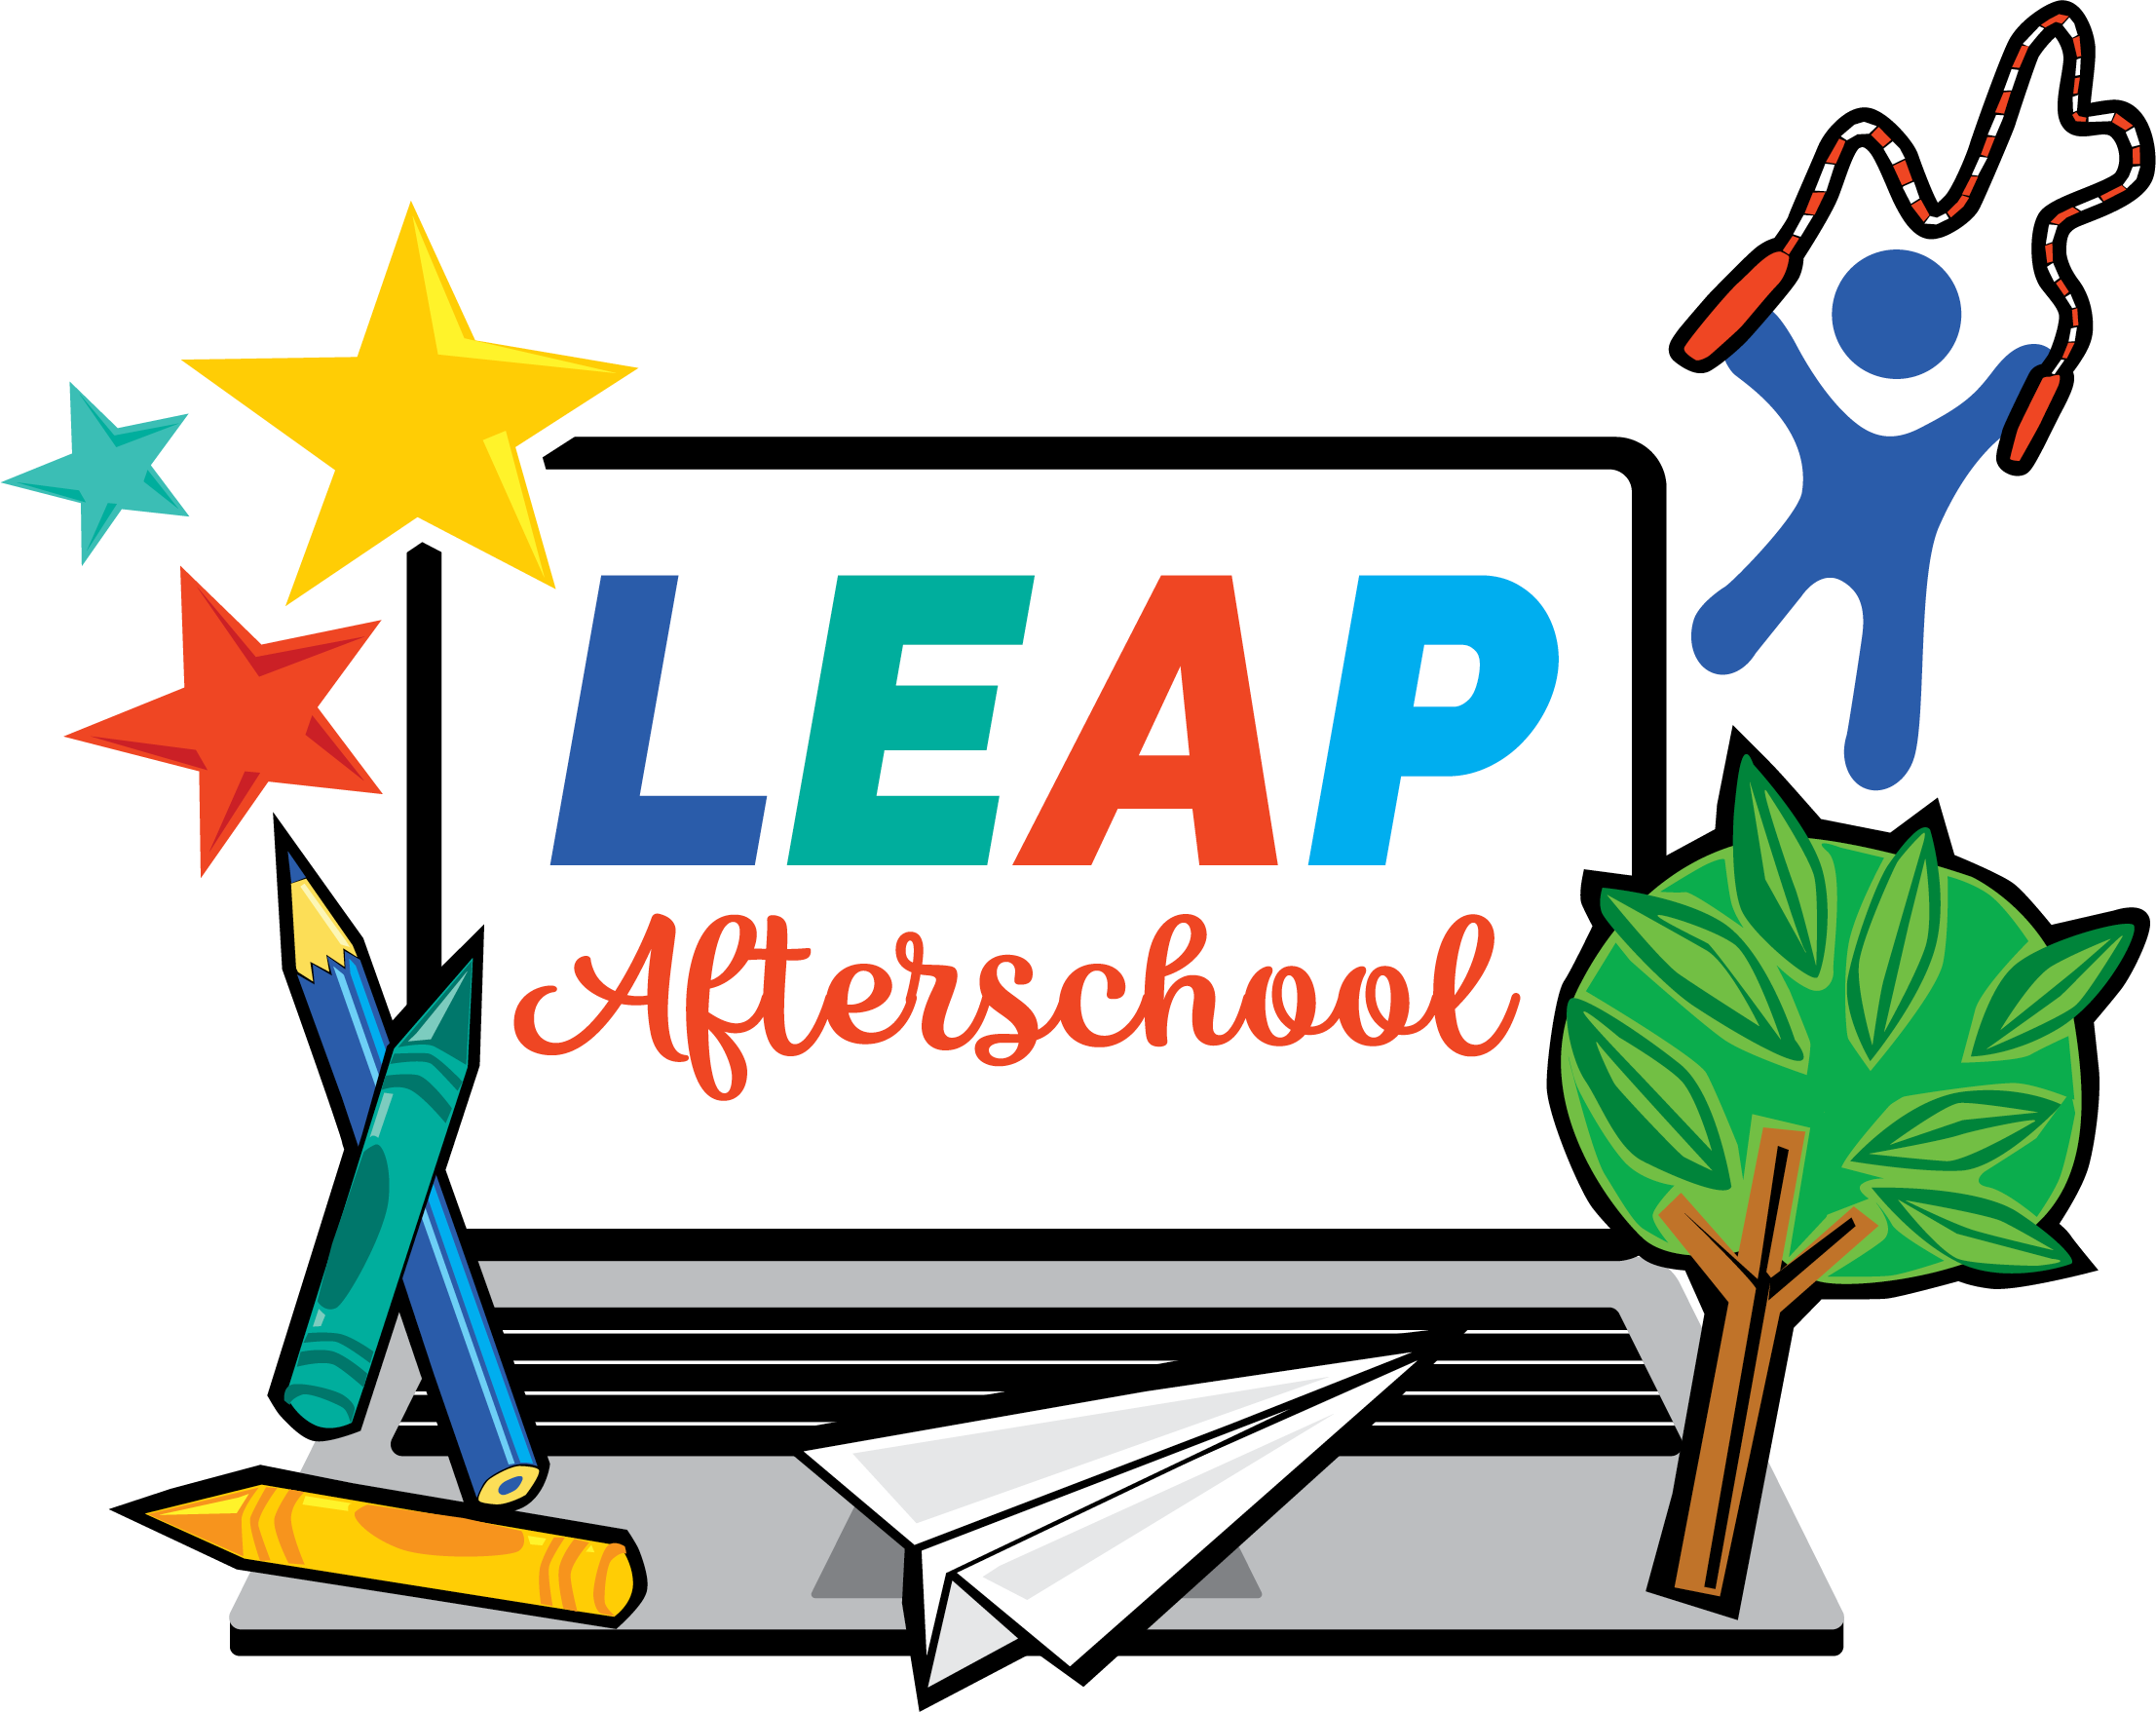 LEAP Logo